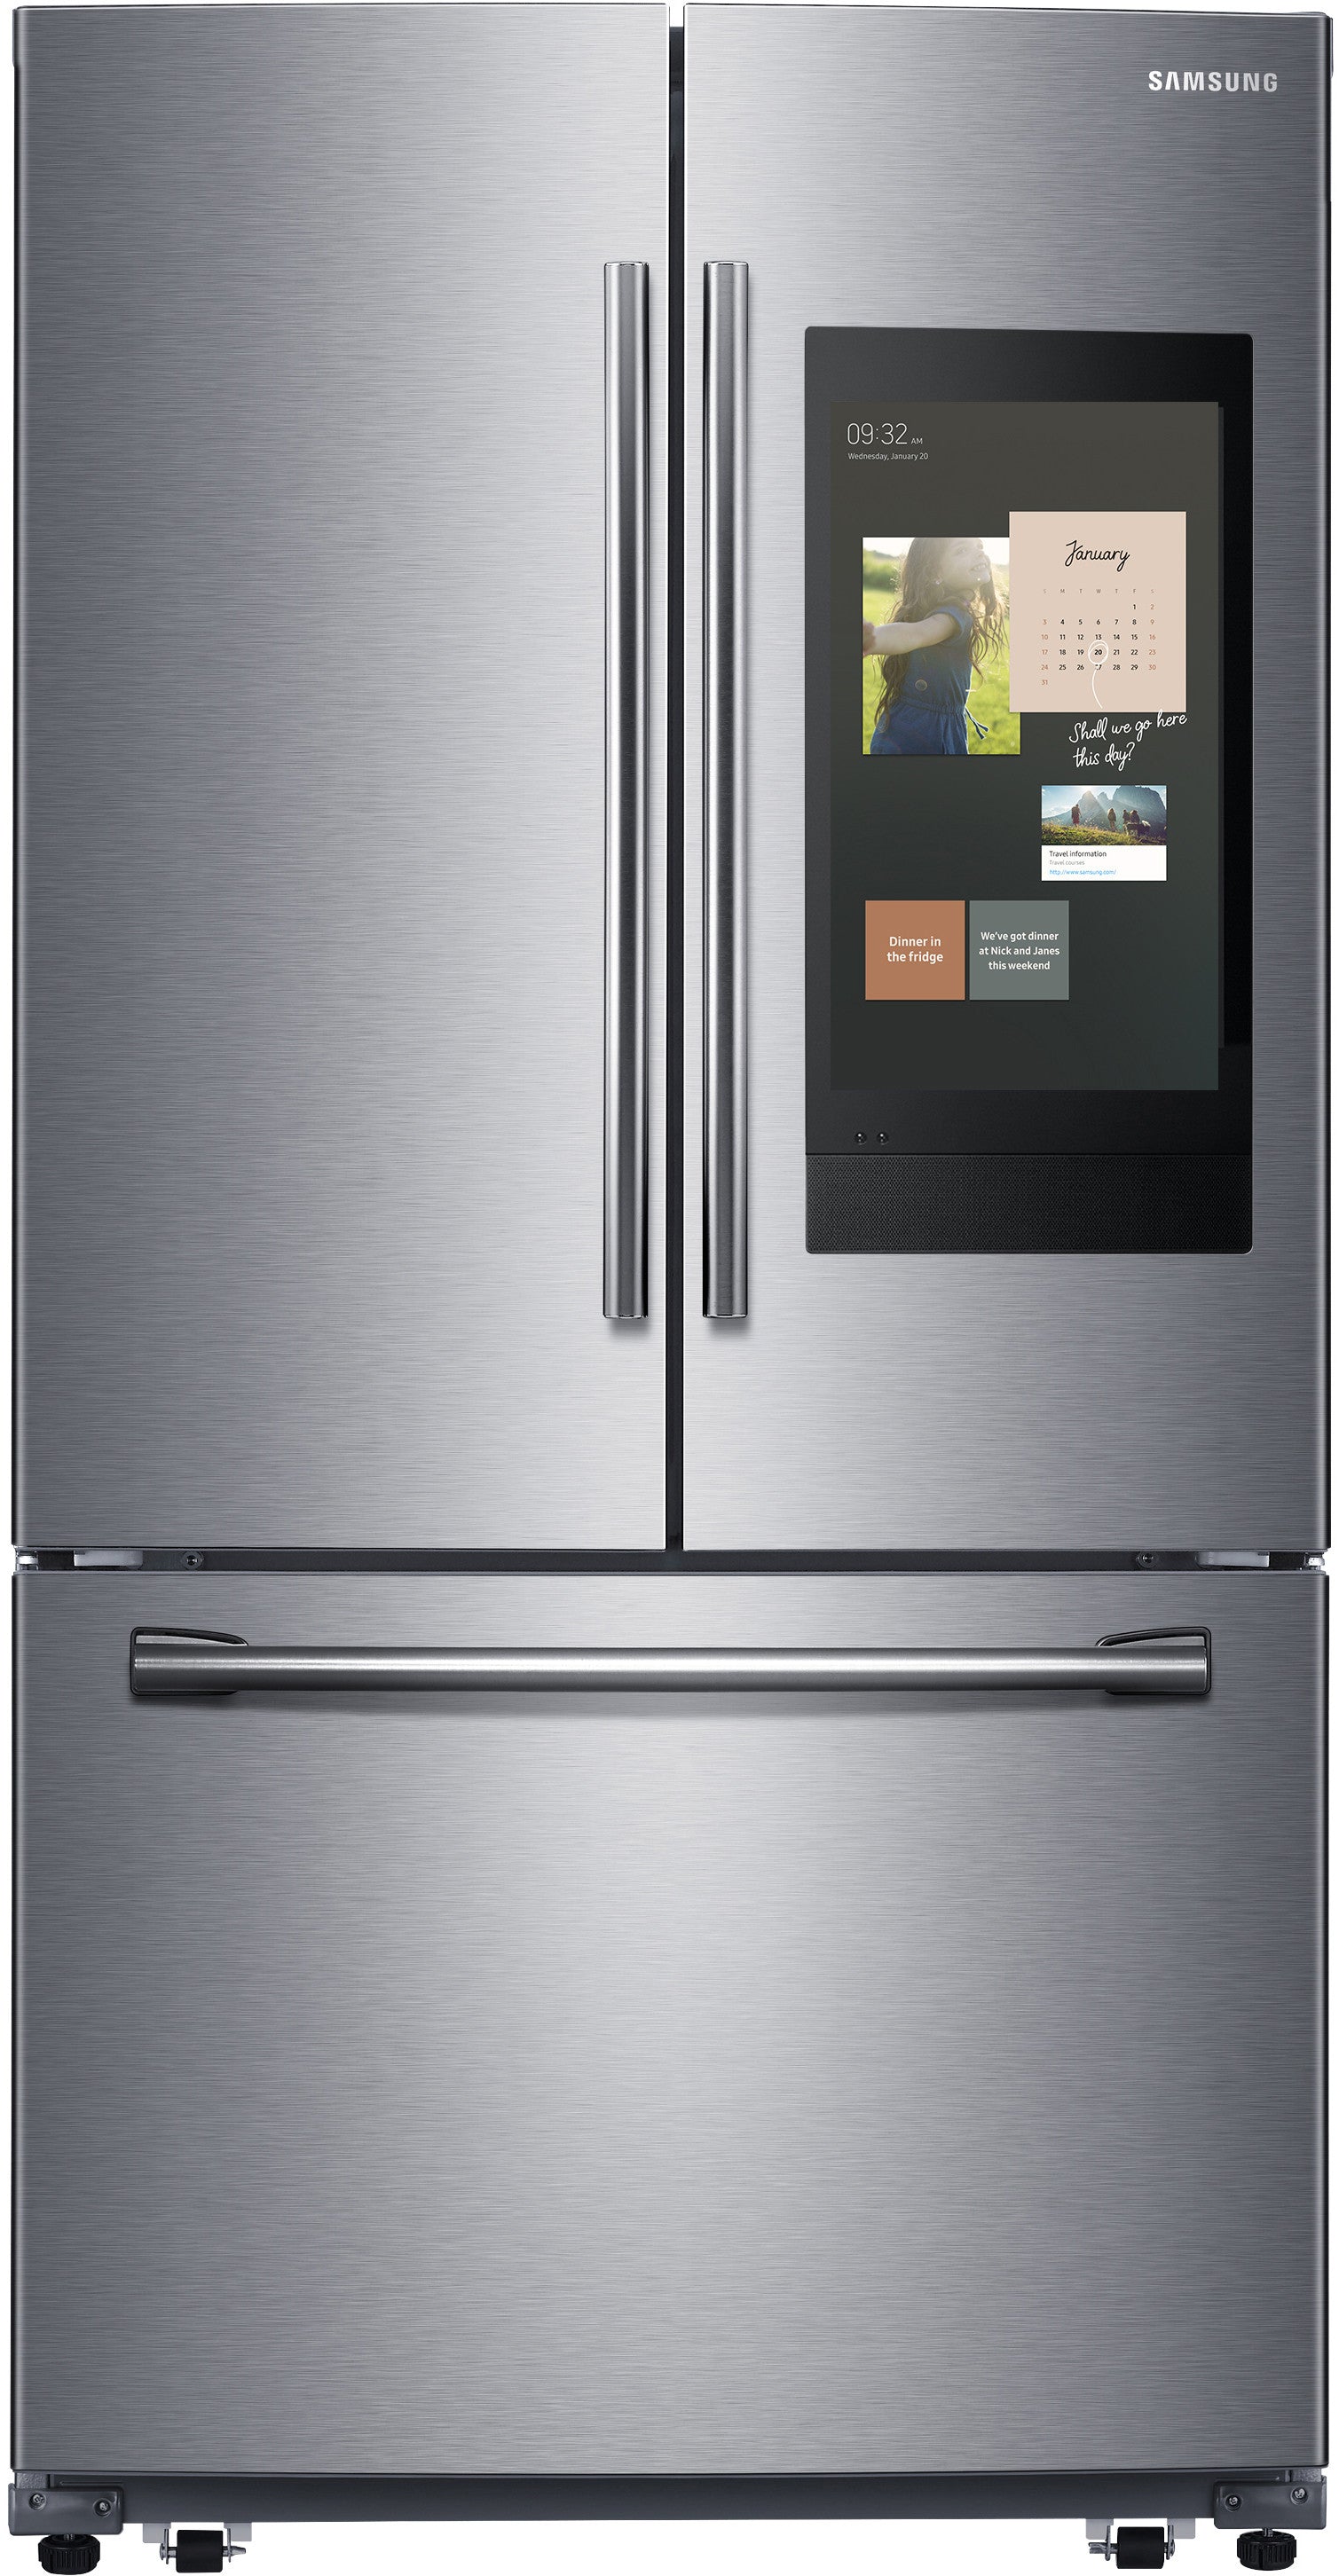 Samsung RF262BEAESR/AA 25.1 Cu. Ft. 3-Door French Door Refrigerator